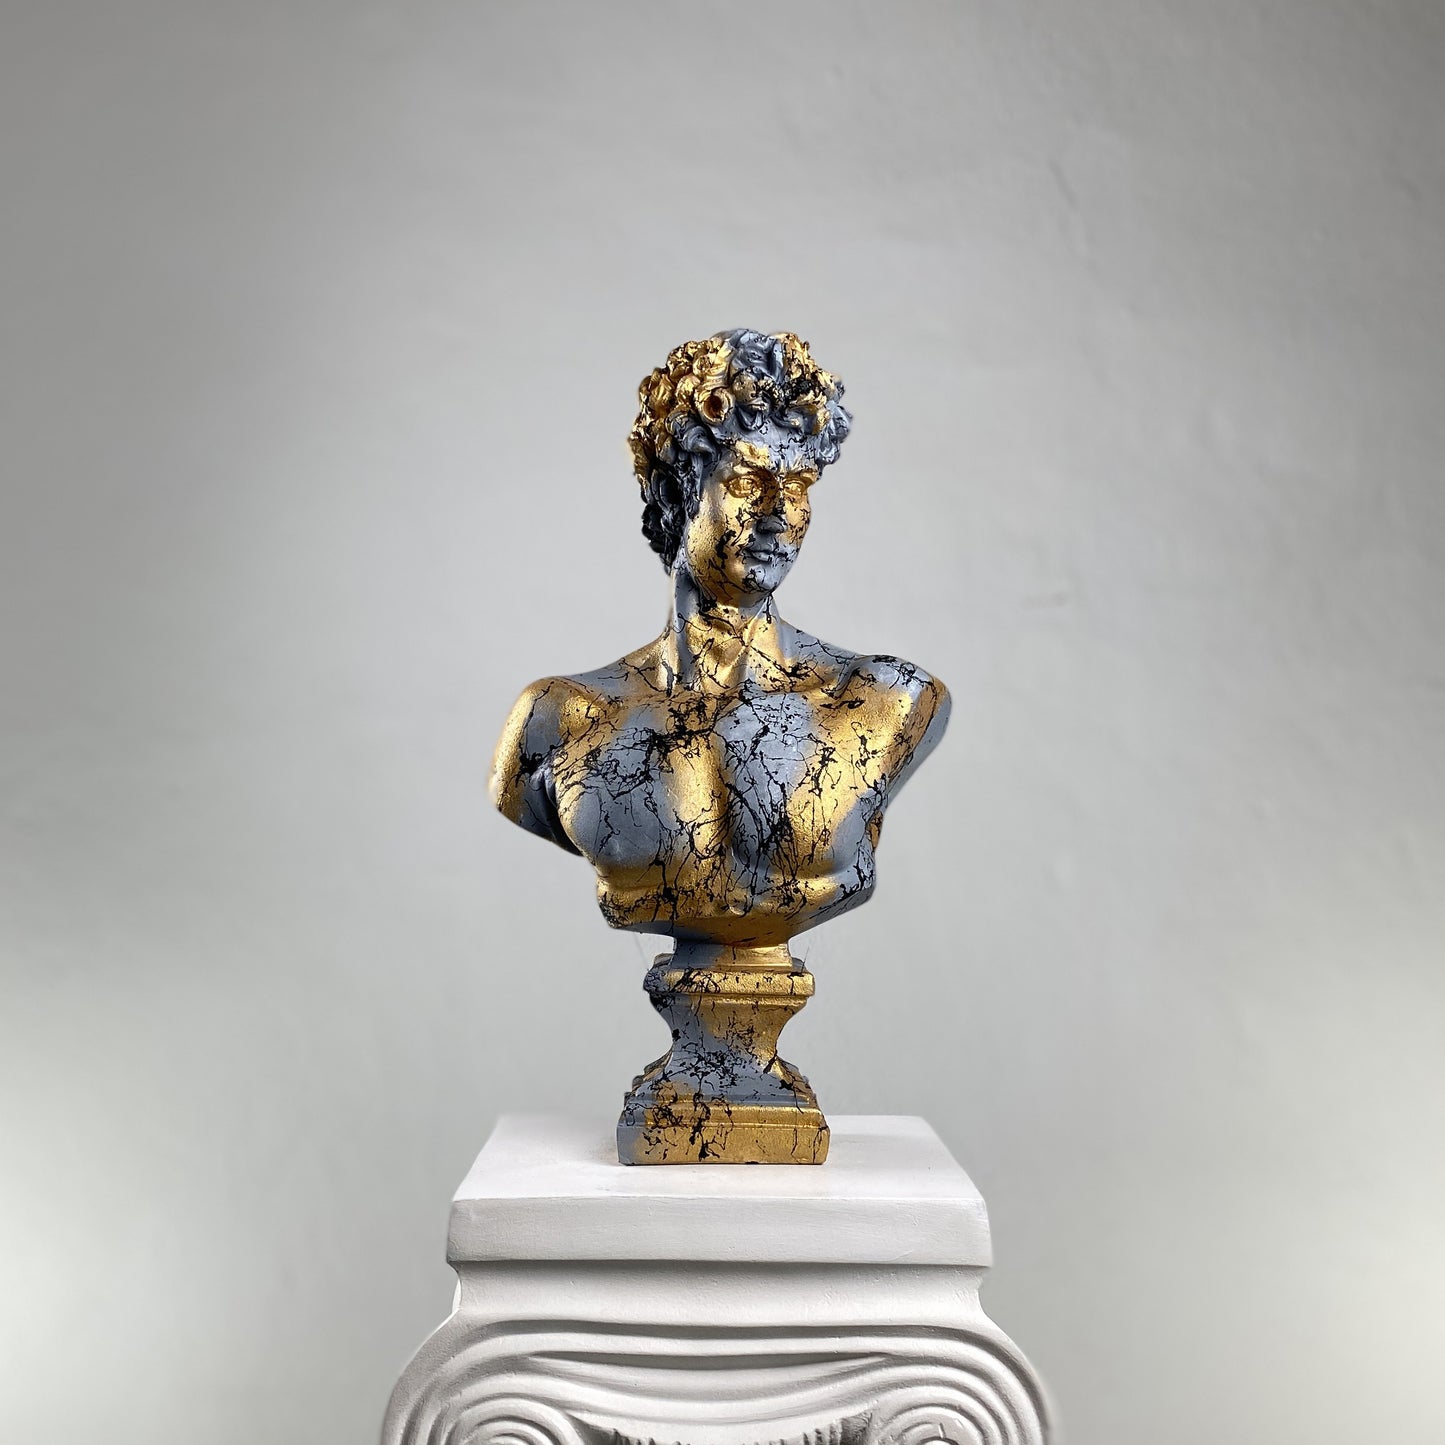 David 'Marble' Pop Art Sculpture, Modern Home Decor, Large Sculpture